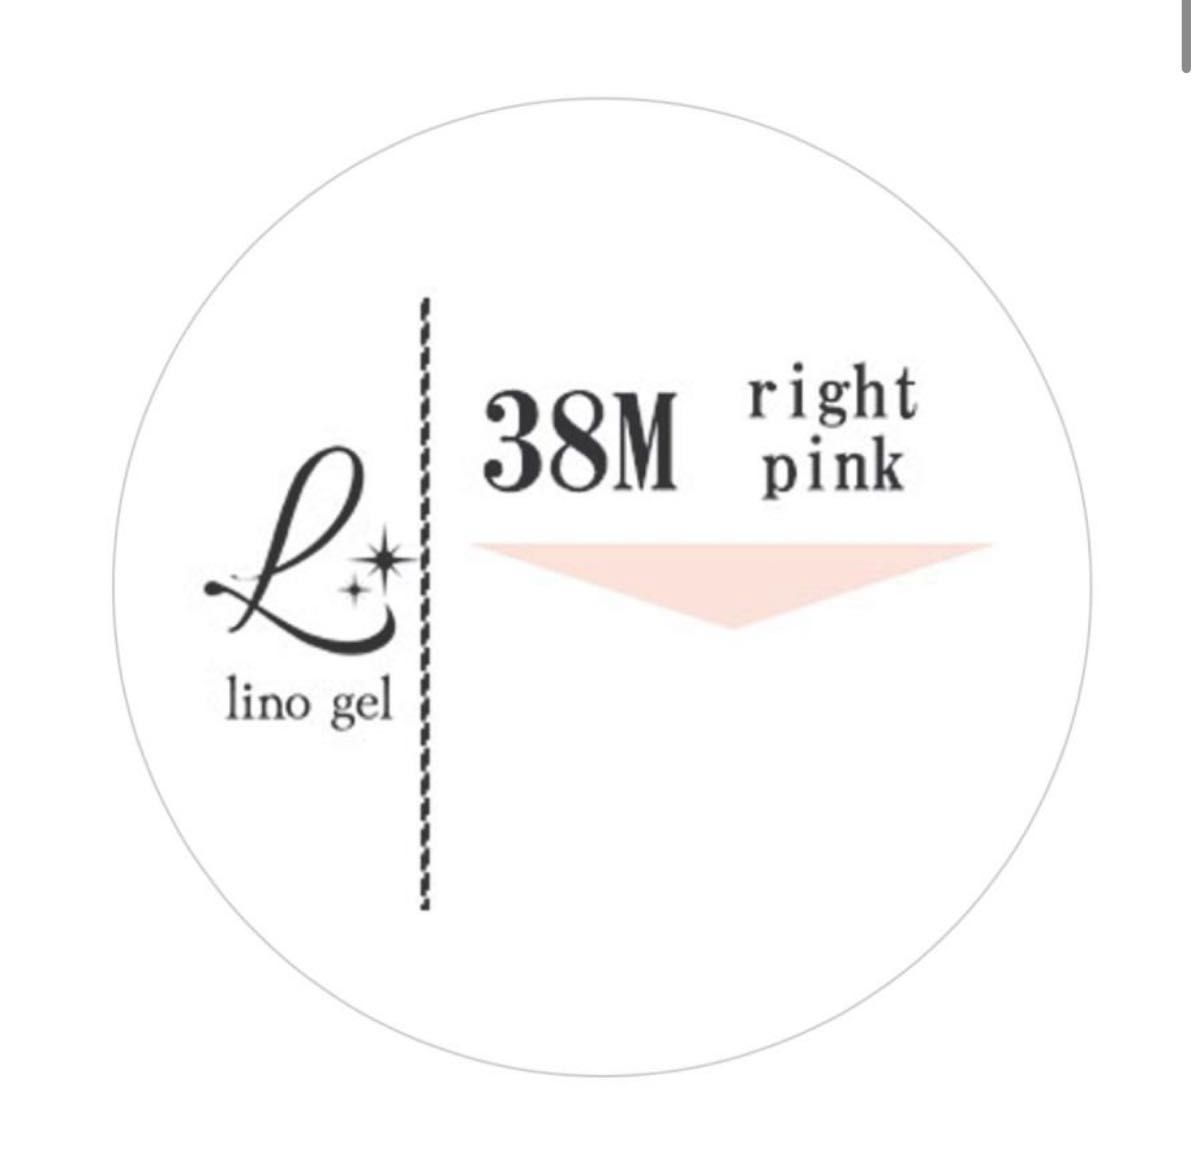 LinoGel リノジェル カラージェル 5g LED/UVライト対応 38M ライトピンク rightpink プロフェショナル